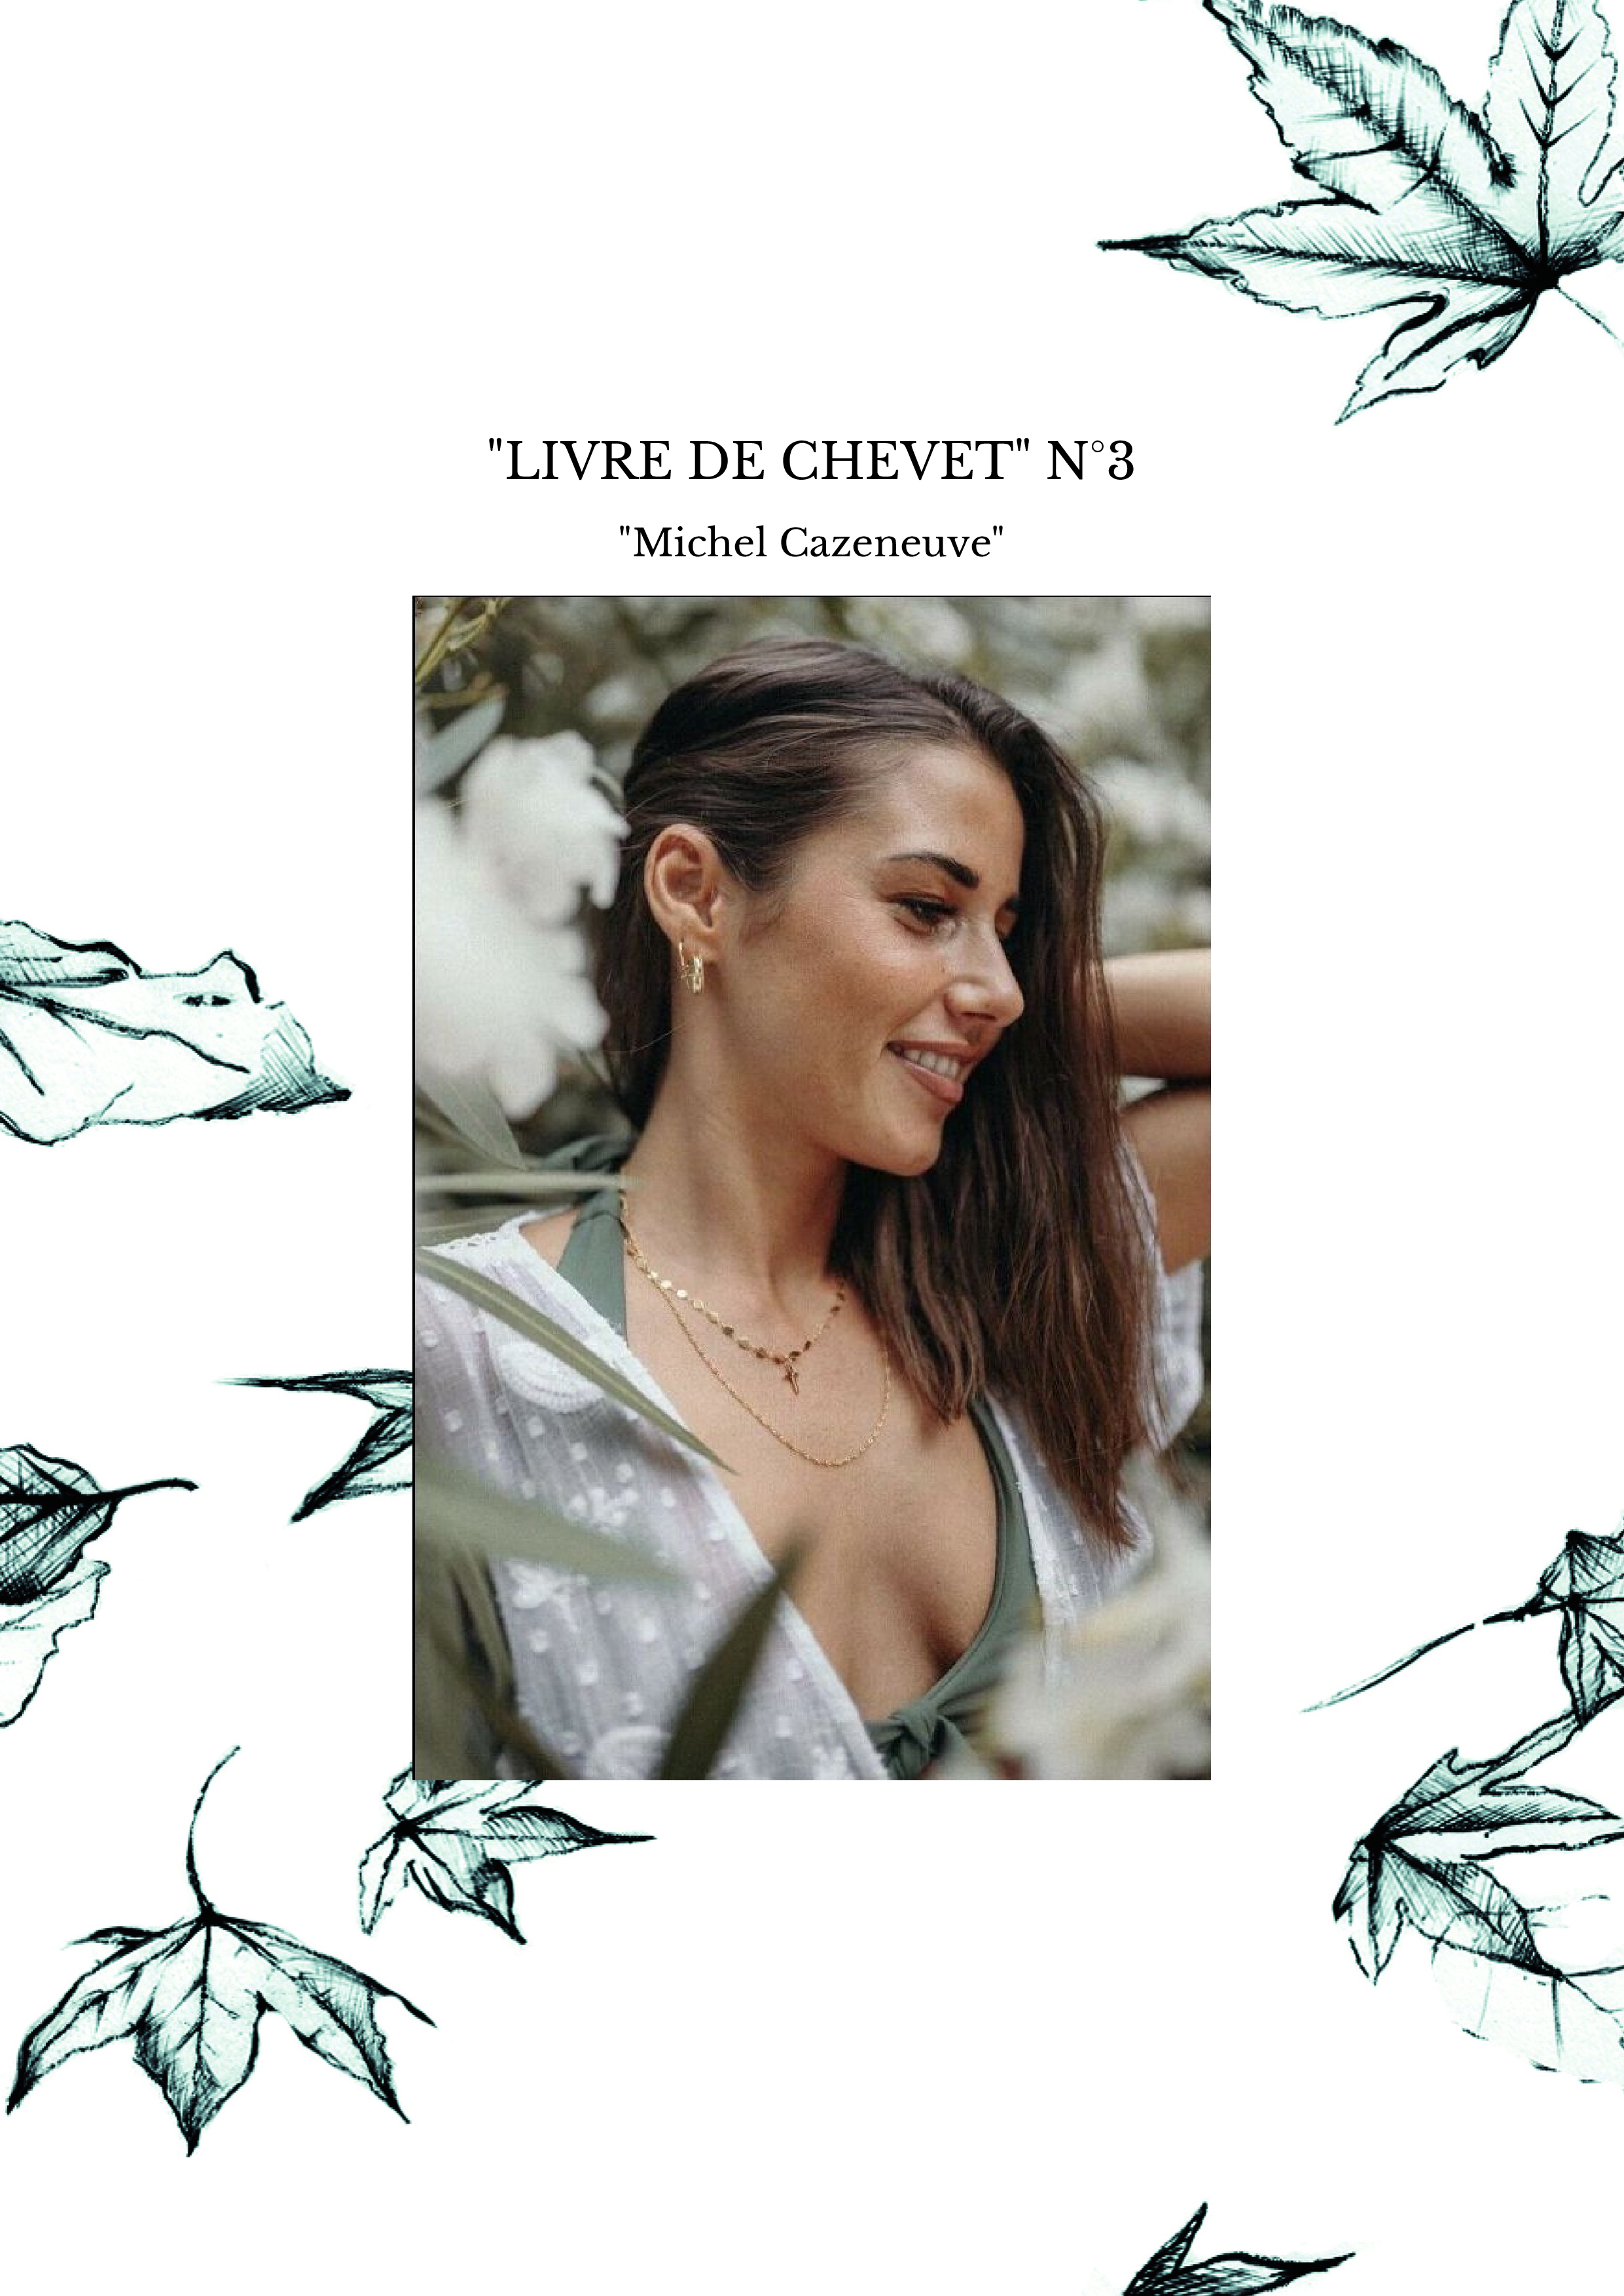 "LIVRE DE CHEVET" N°3